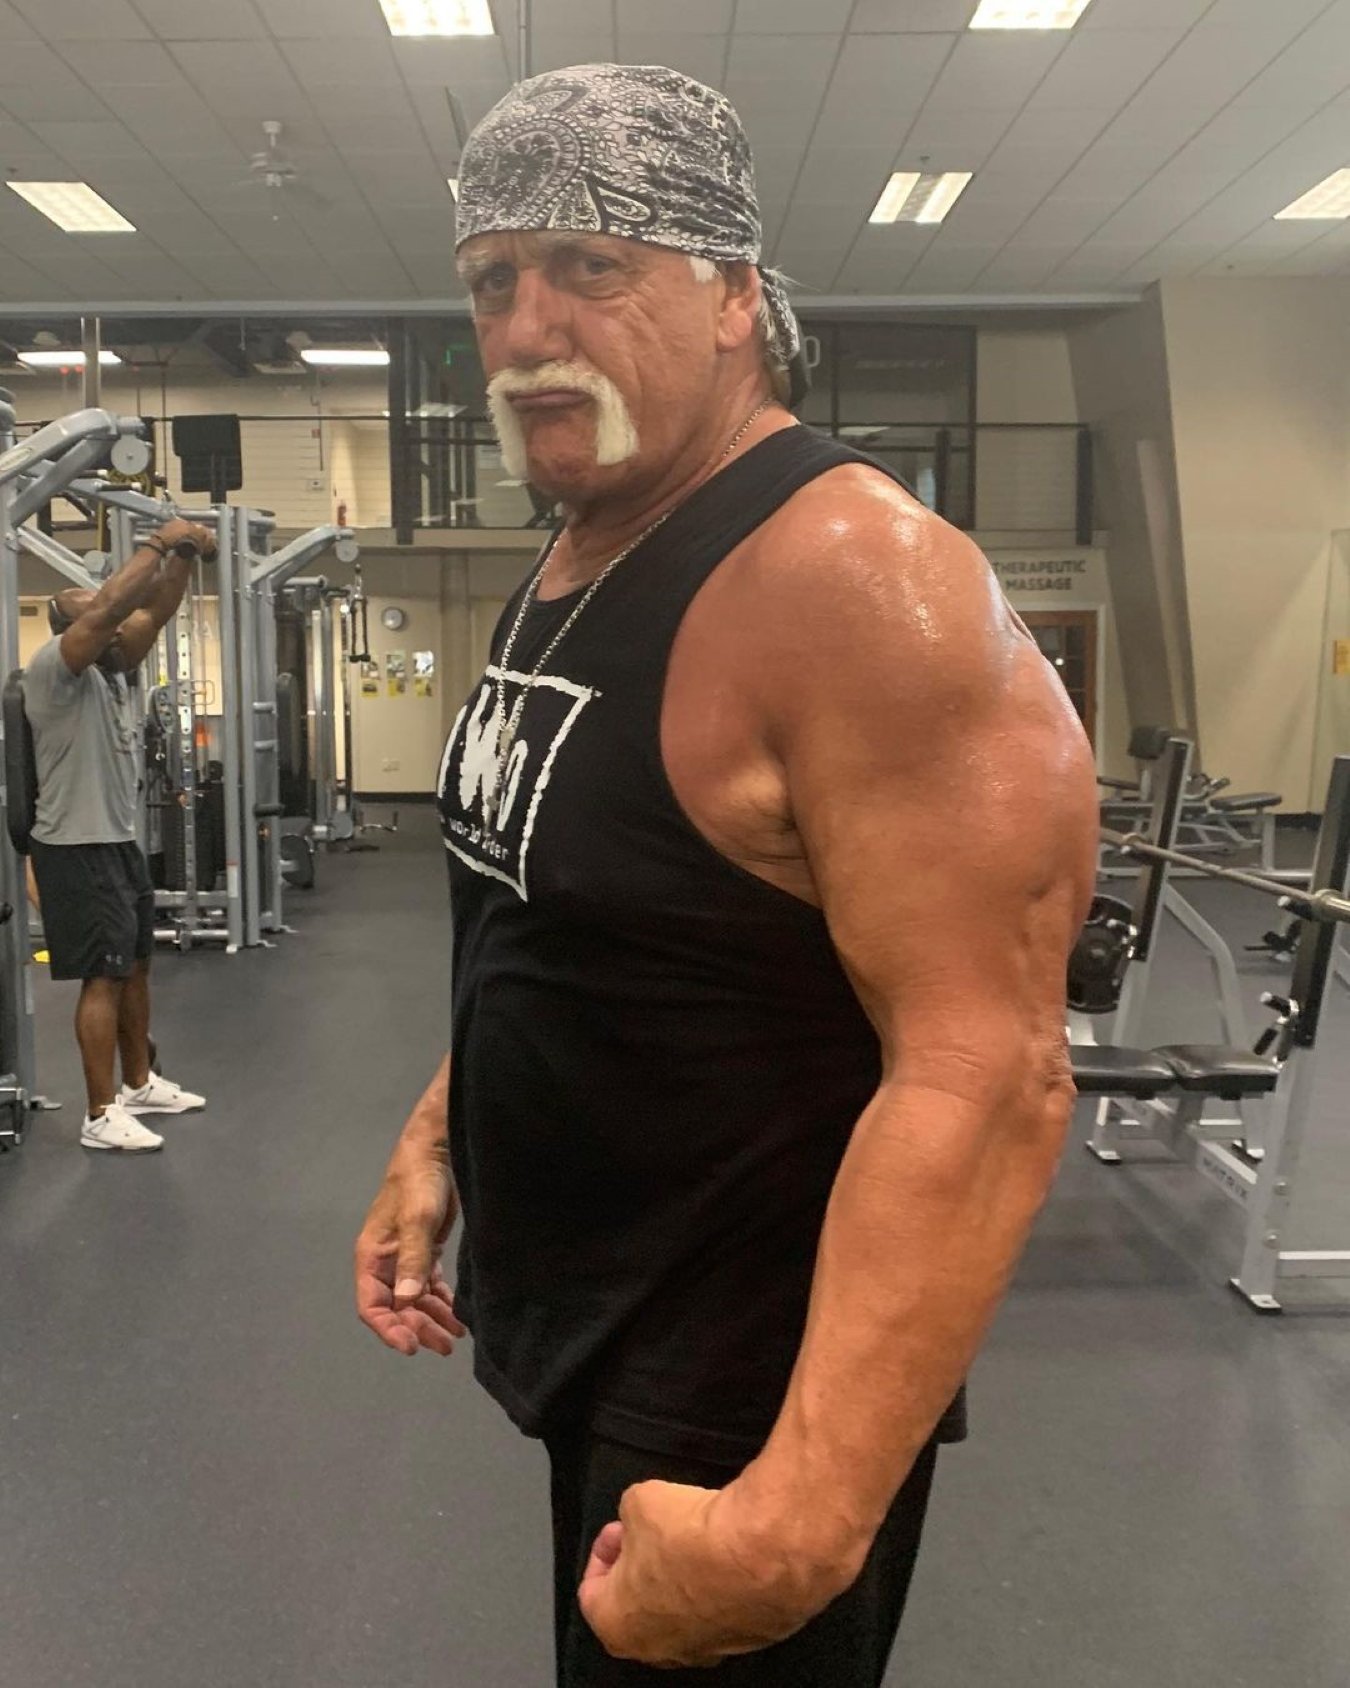 Conmoción con Hulk Hogan: la leyenda de la lucha libre en situación límite